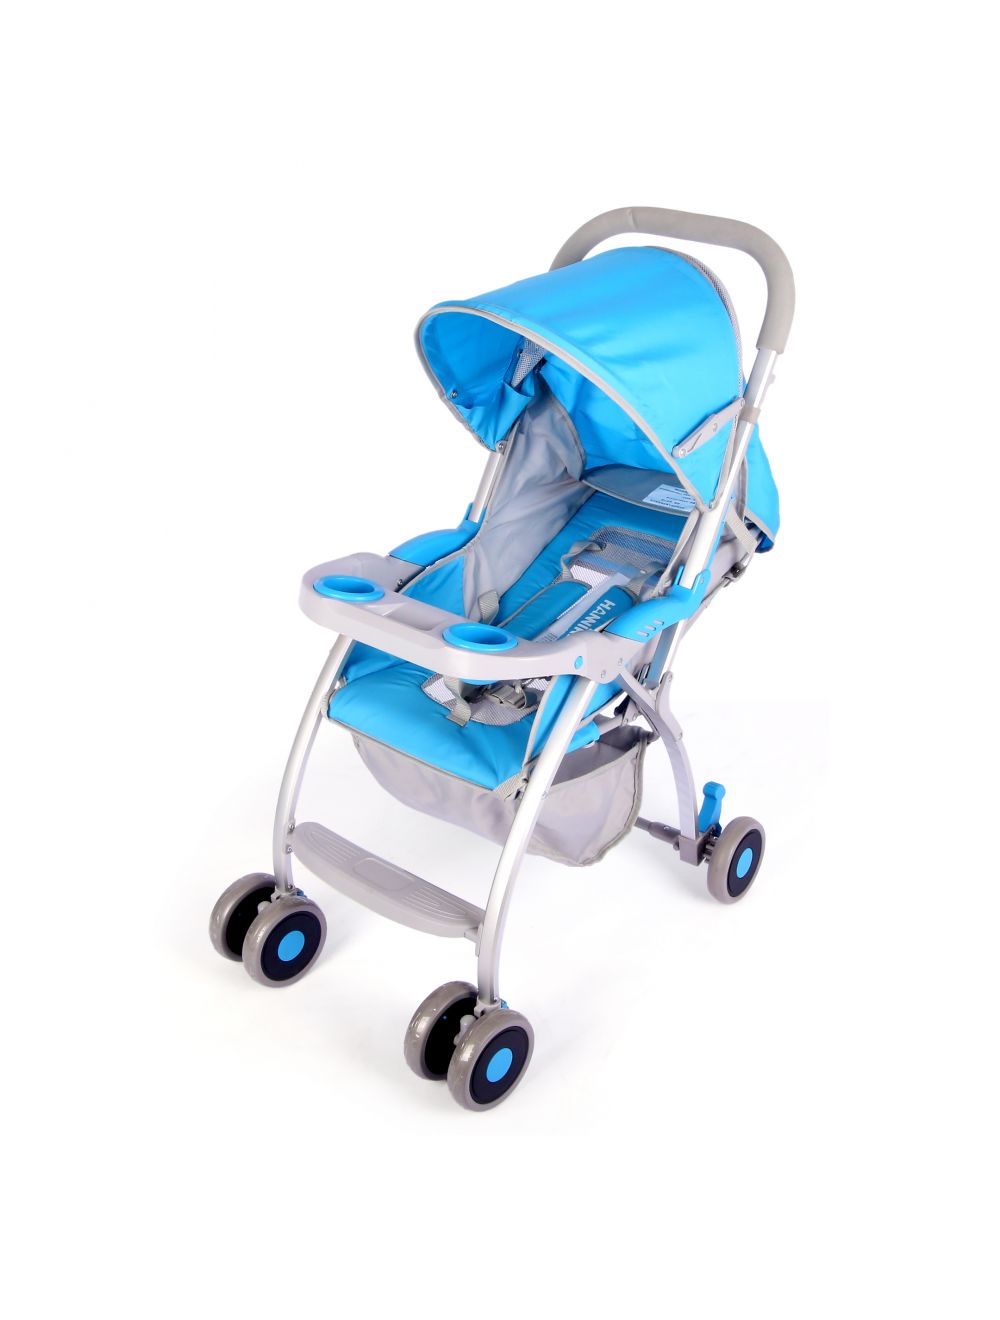 Joymaker Baby Stroller Blue & White